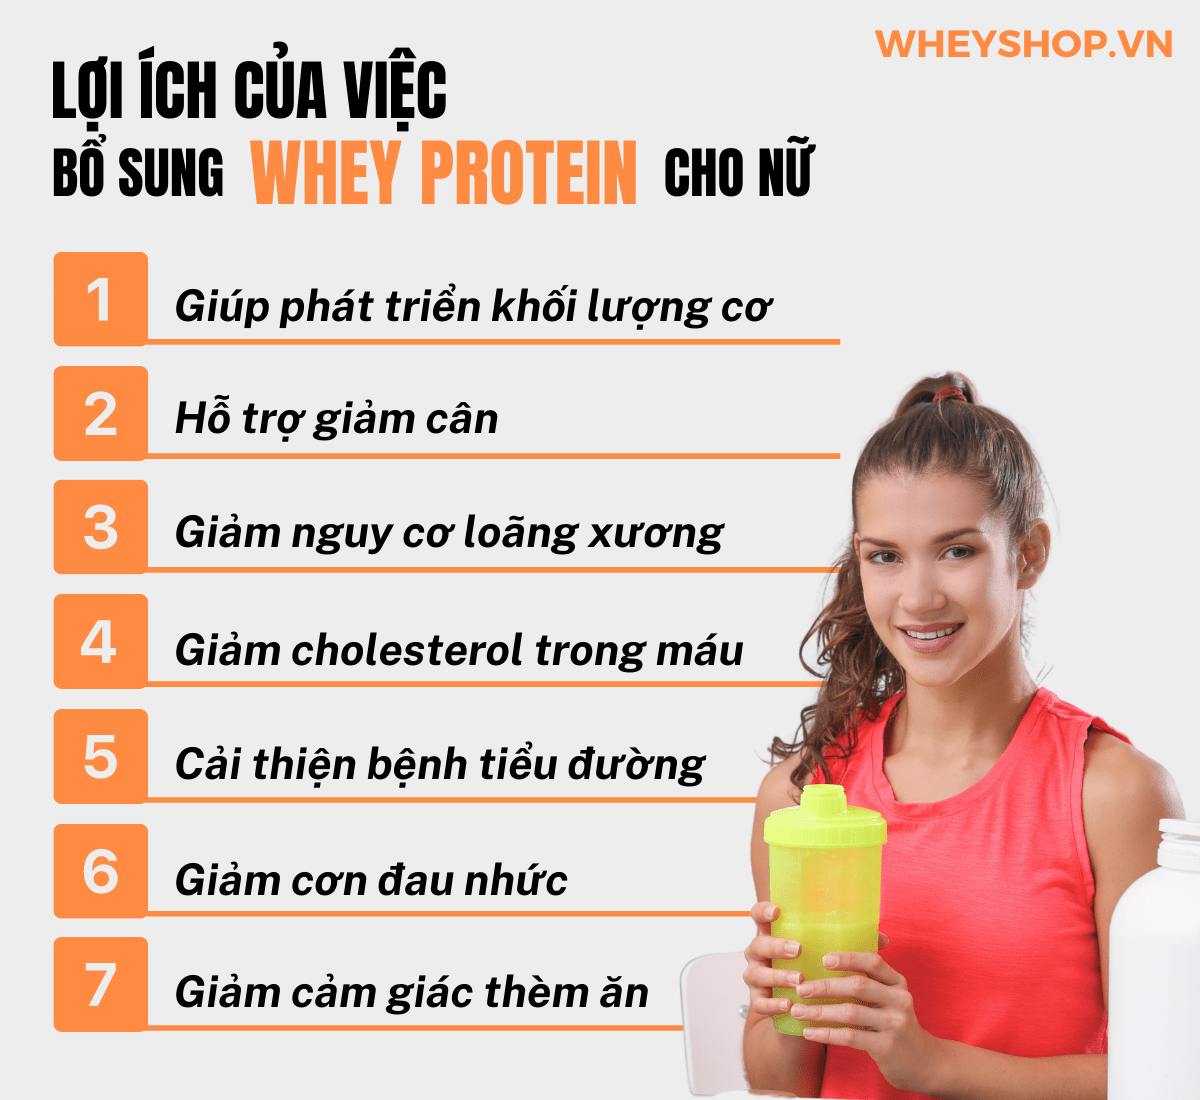 Nếu bạn đang băn khoăn tìm kiếm sản phẩm Whey Protein cho nữ thì hãy cùng WheyShop tham khảo chi tiết bài viết ngay sau đây nhé...